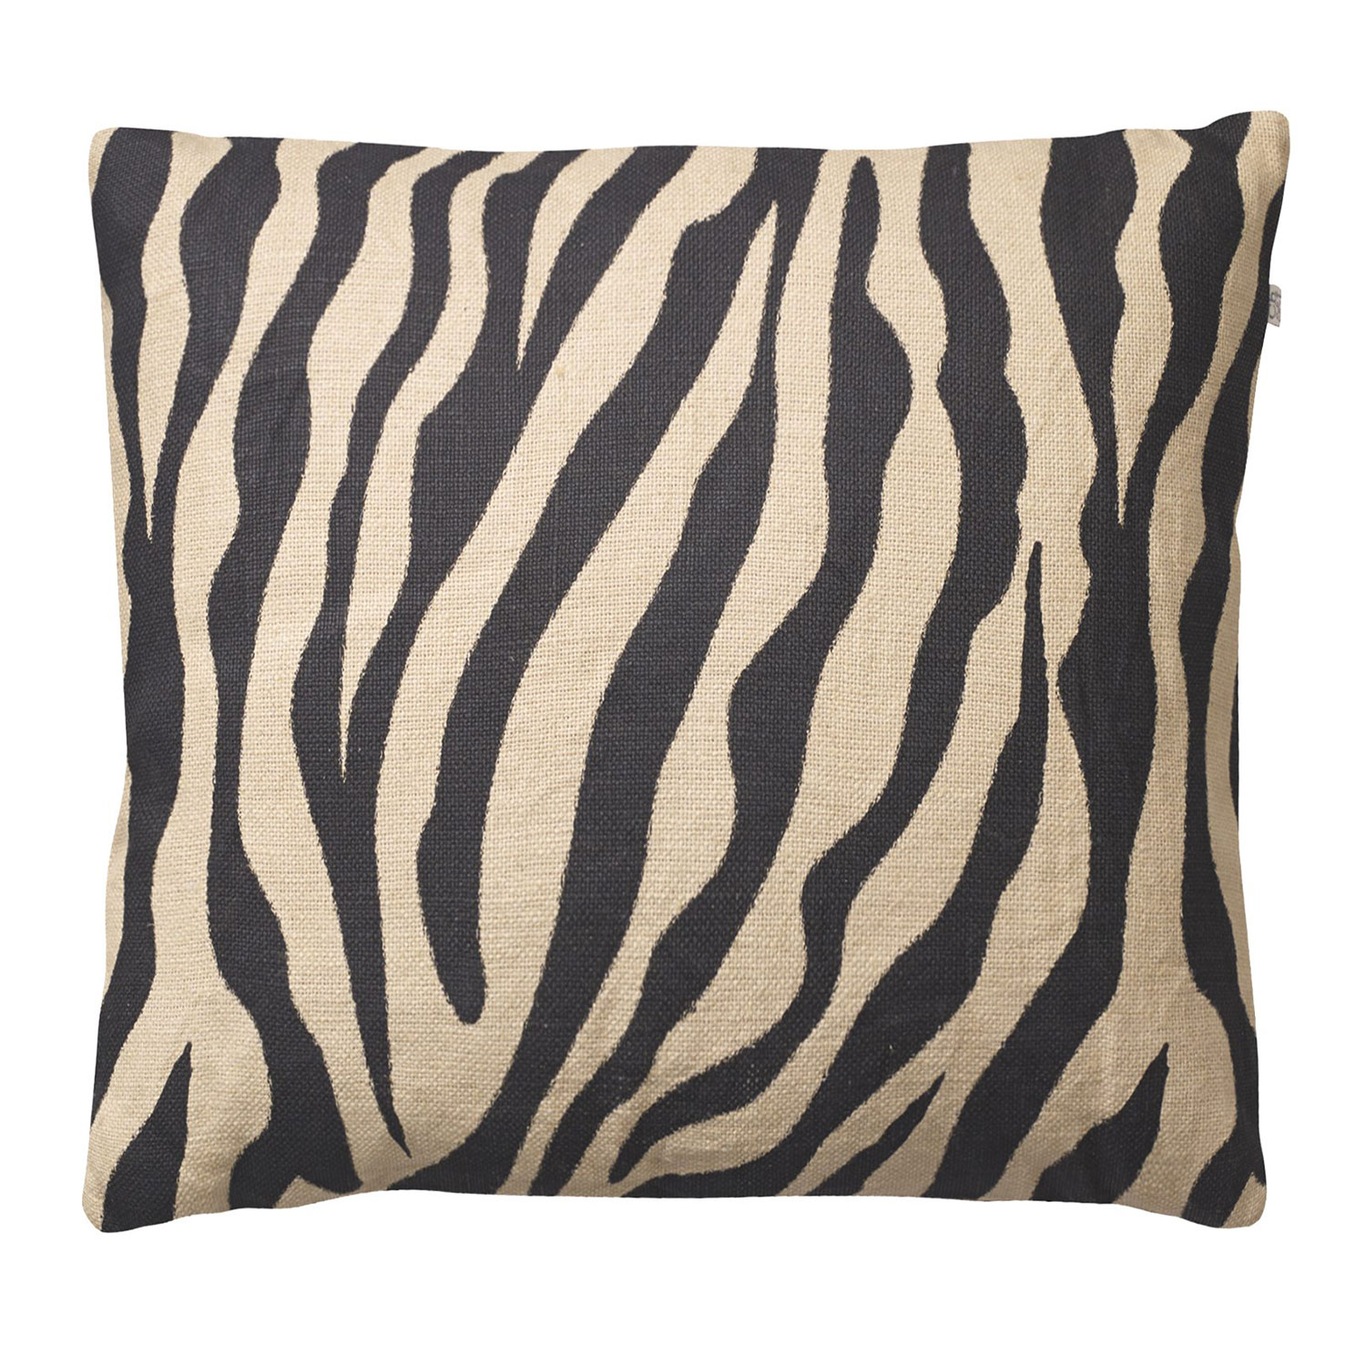 Zebra Kuddfodral 50x50 cm, Beige/Svart